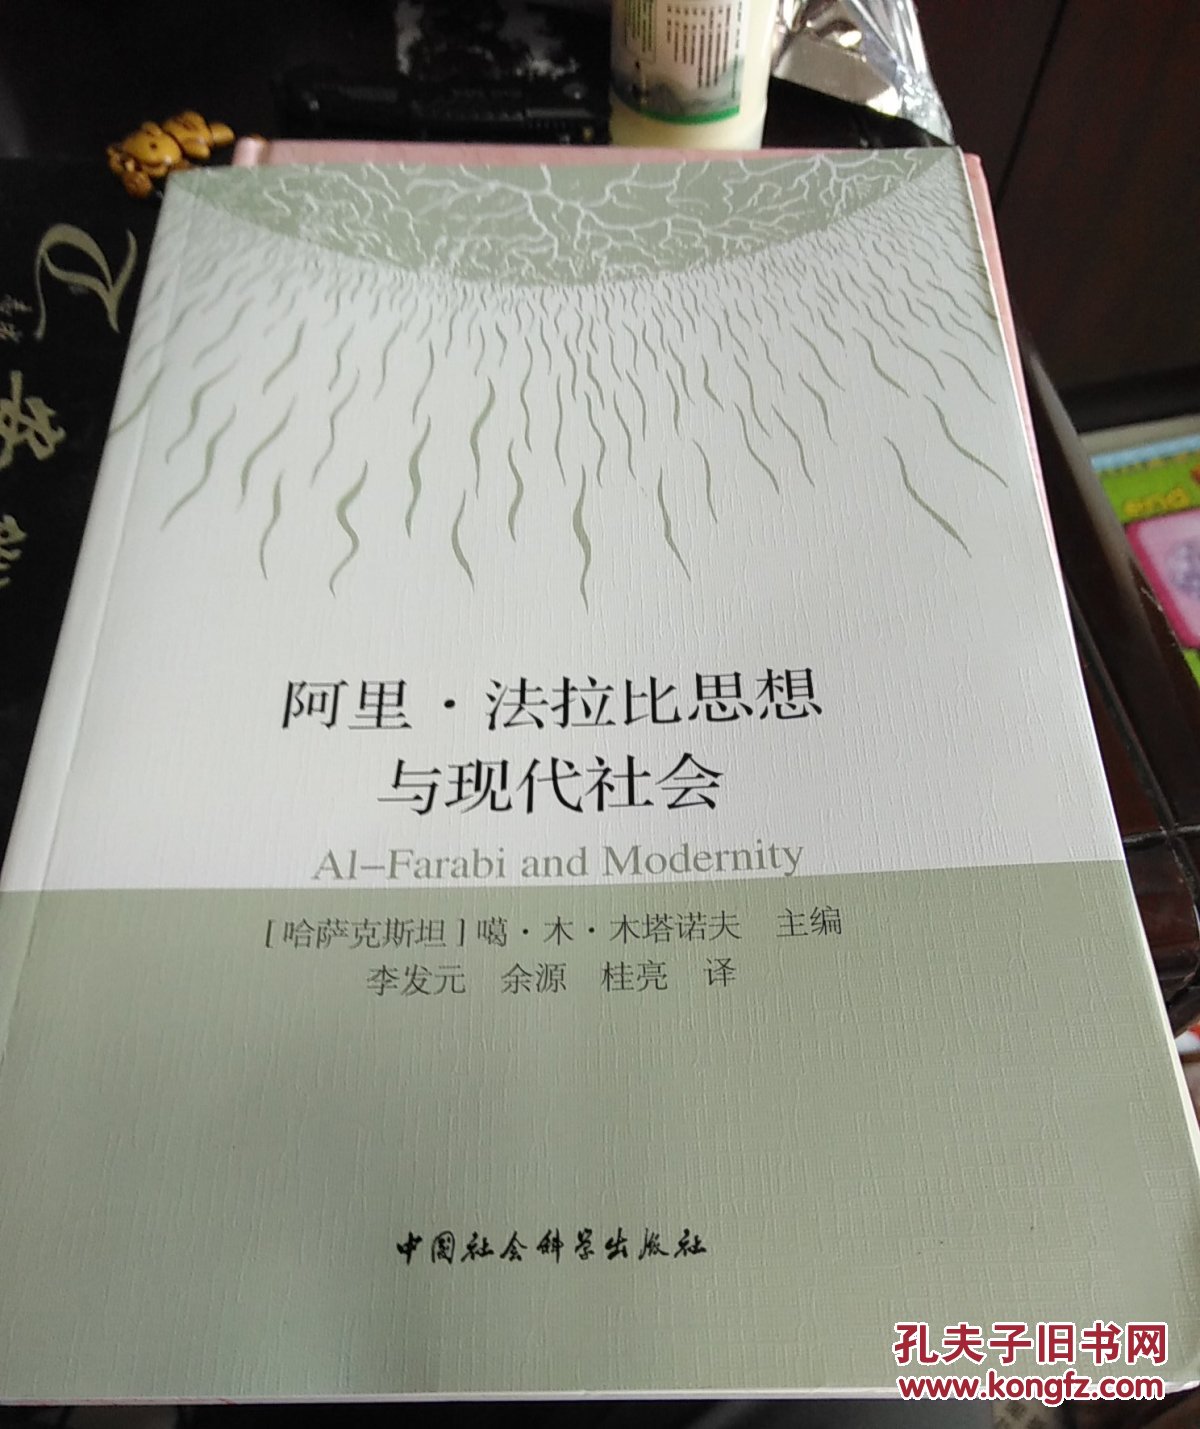 阿里法拉比思想与现代社会 中亚研究专家李宁签名版